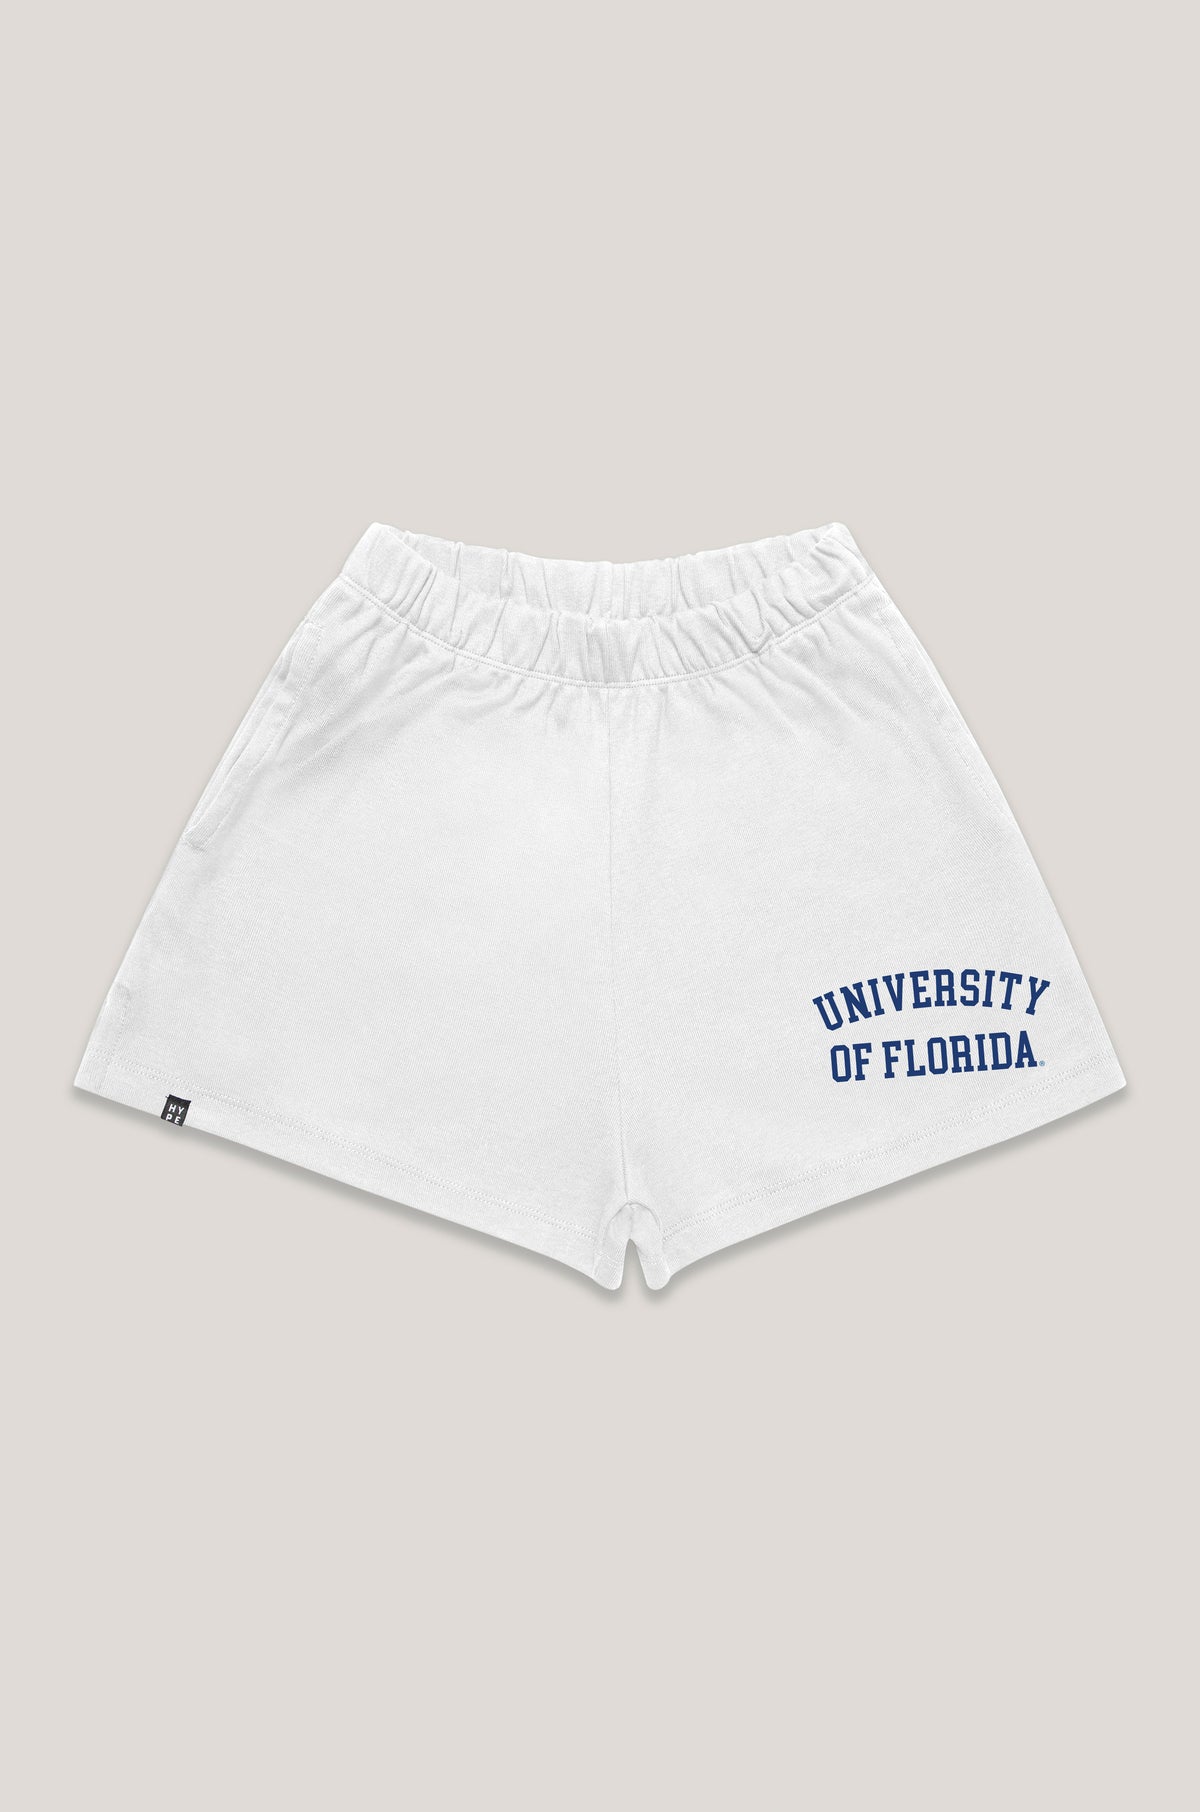 University of Florida Track Shorts